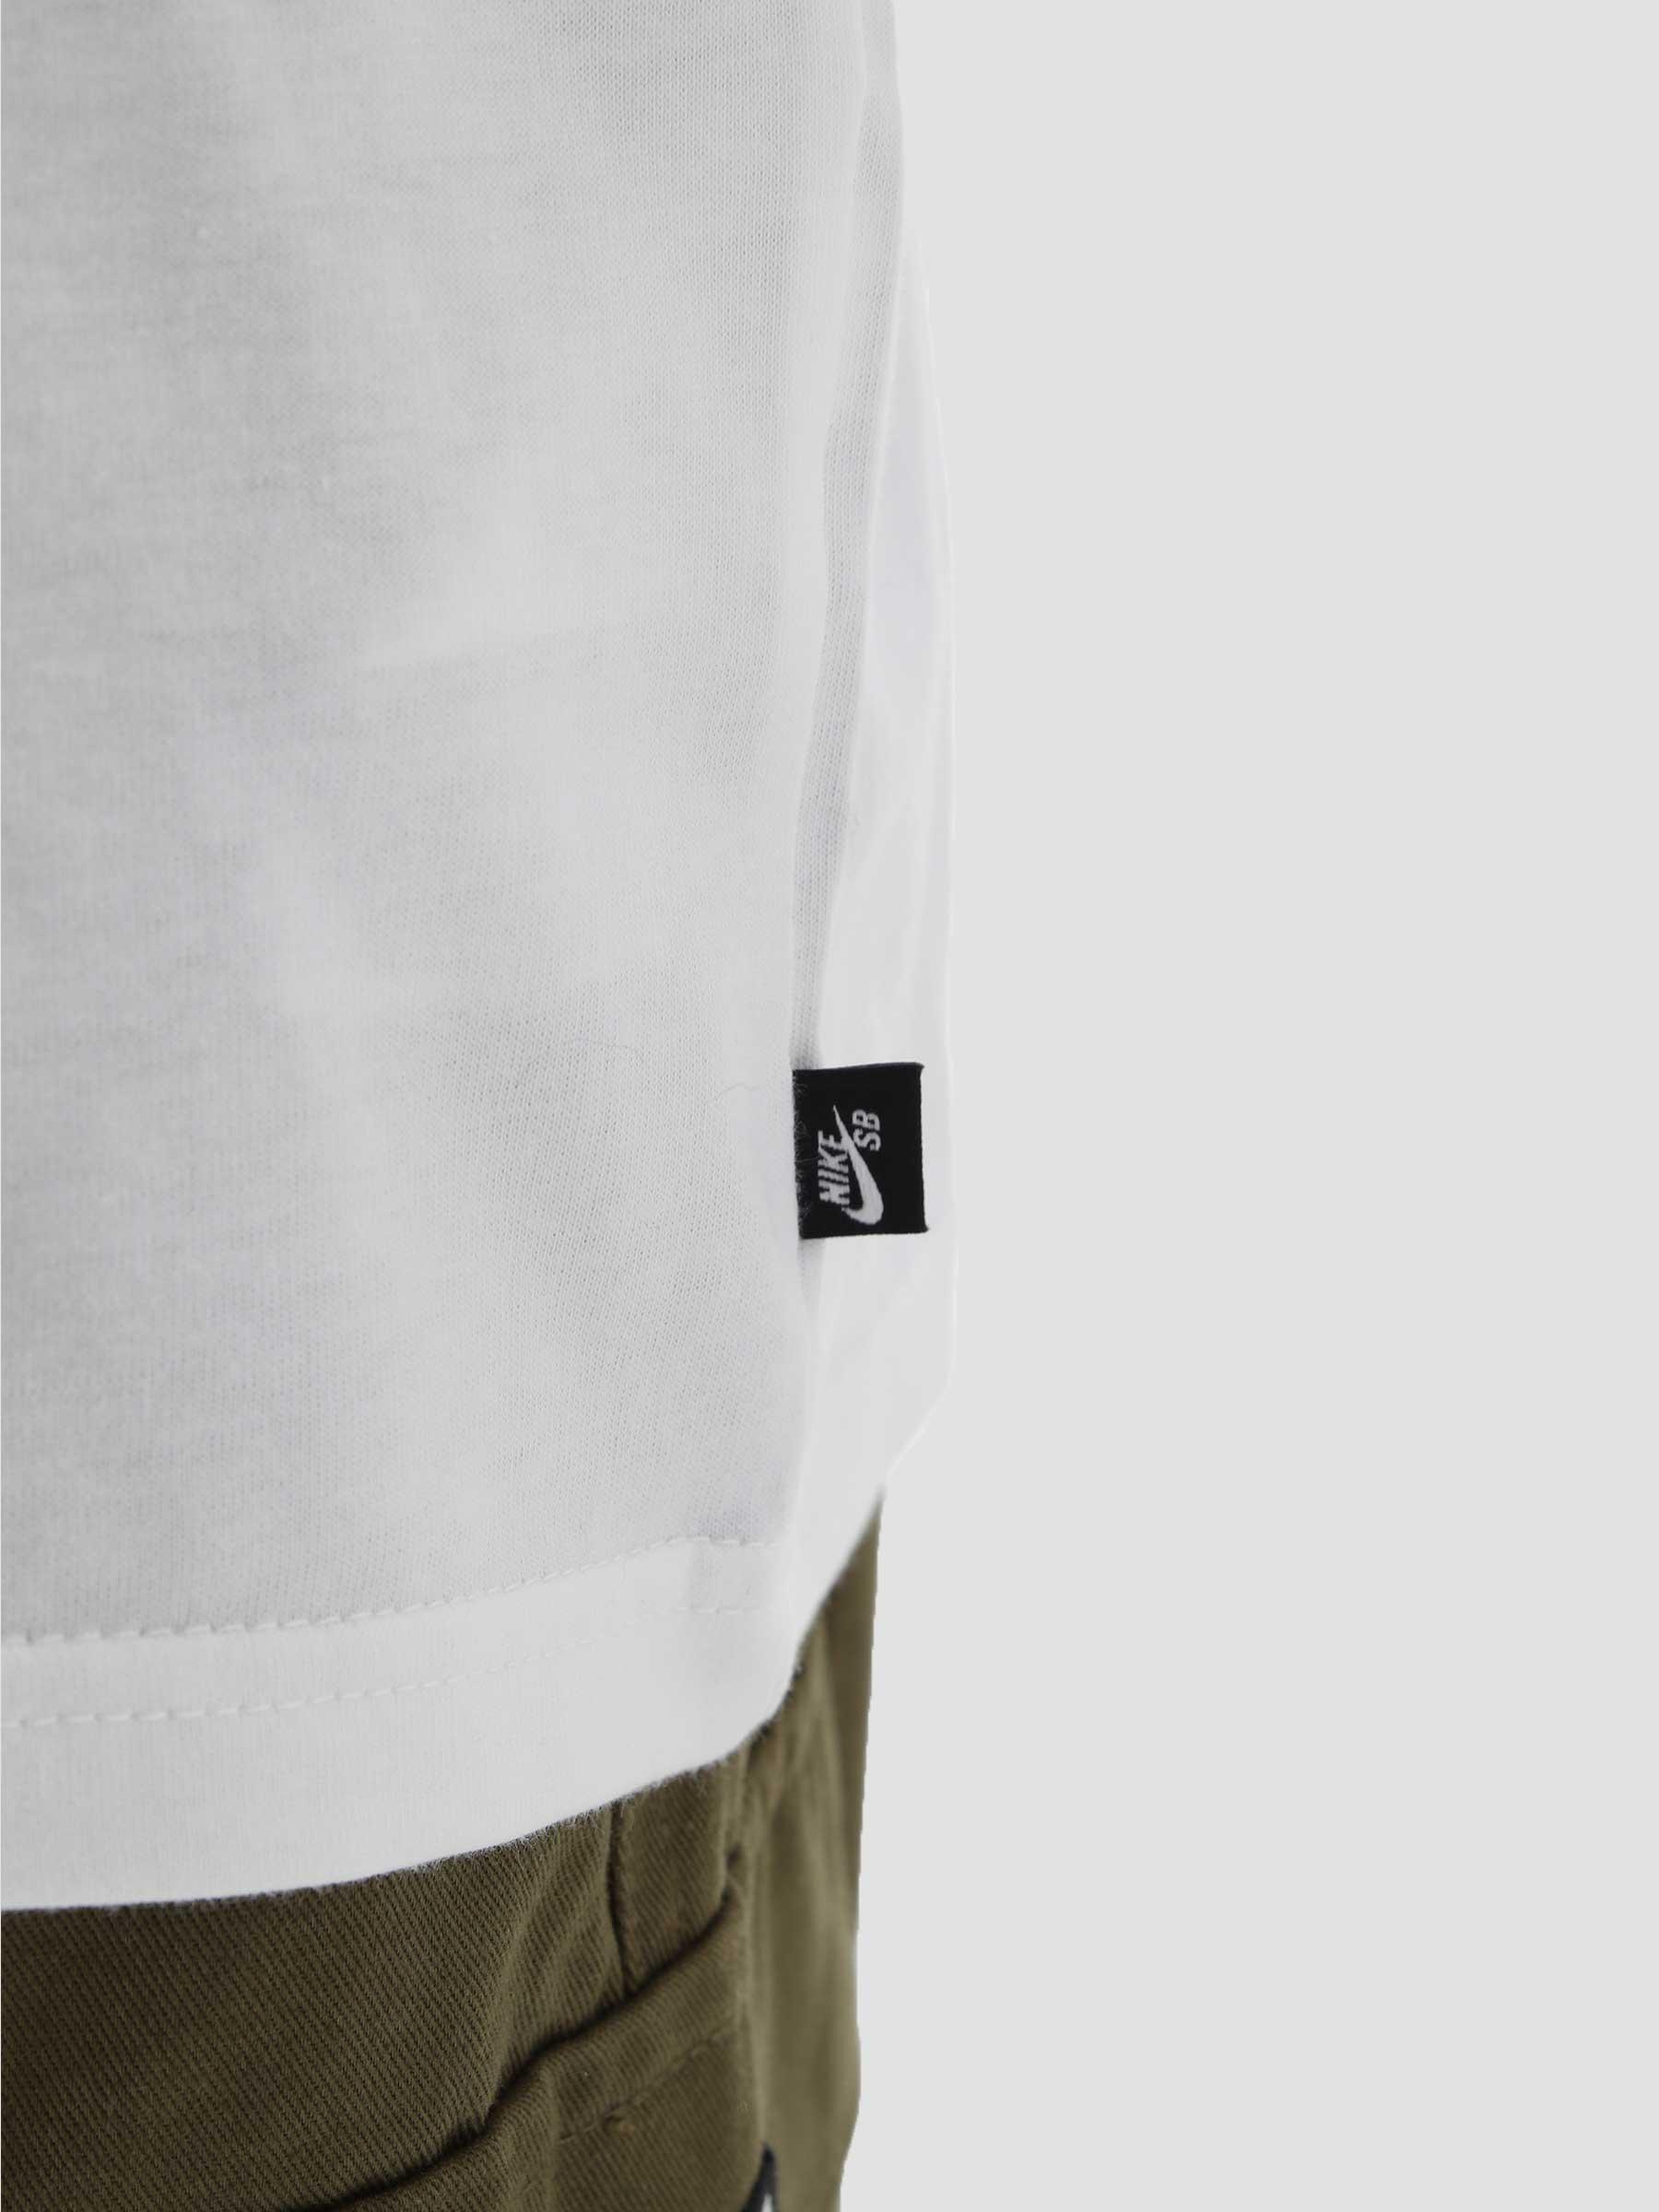 M Nk SB T-Shirt Snaked White DM2257-100